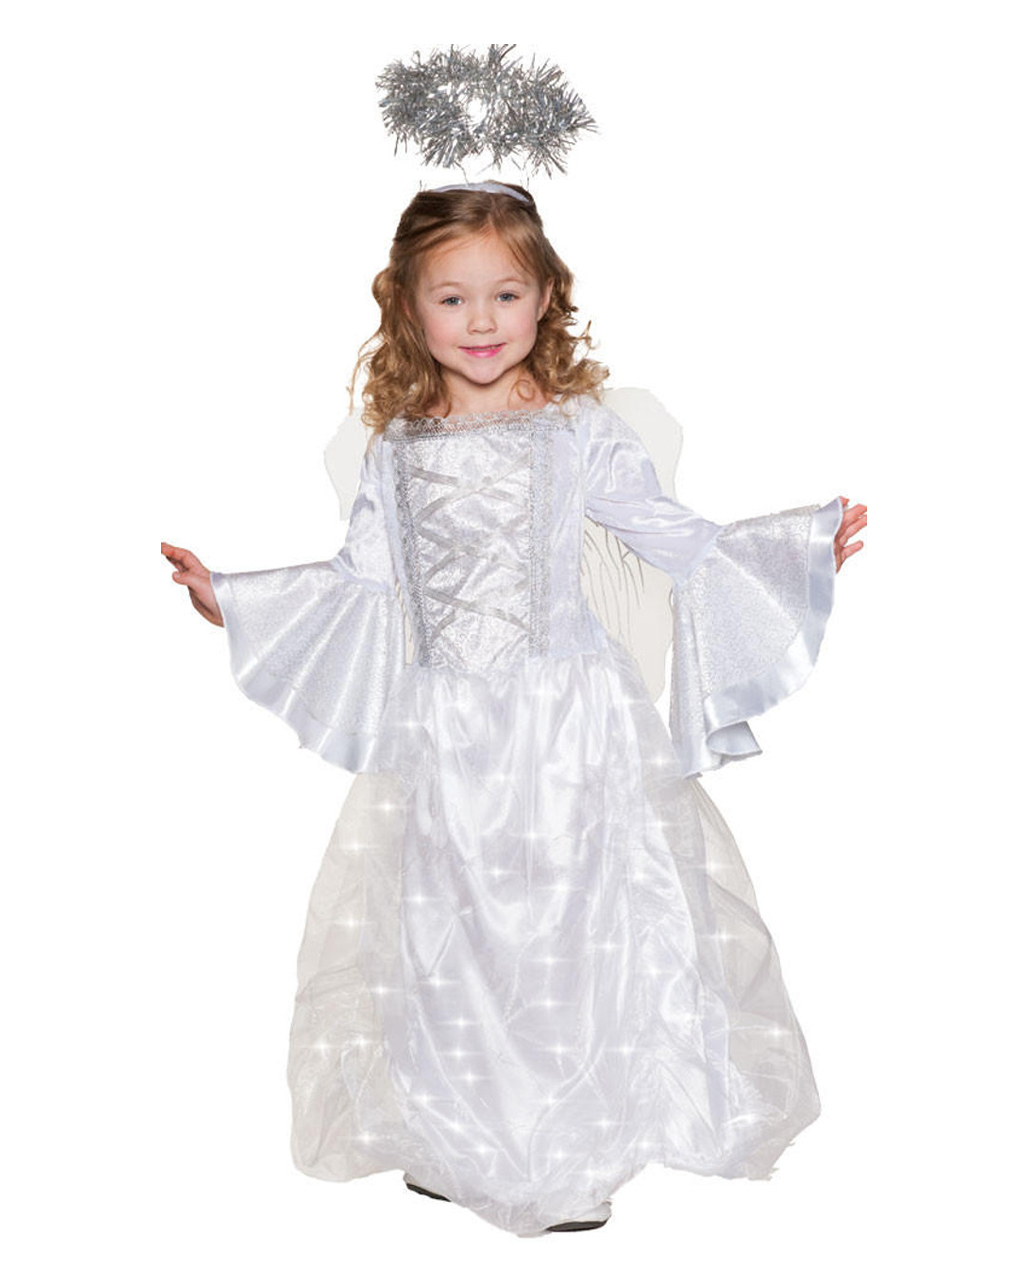 Weißer Engel Kinder Kostüm leuchtend kaufen | Karneval Universe